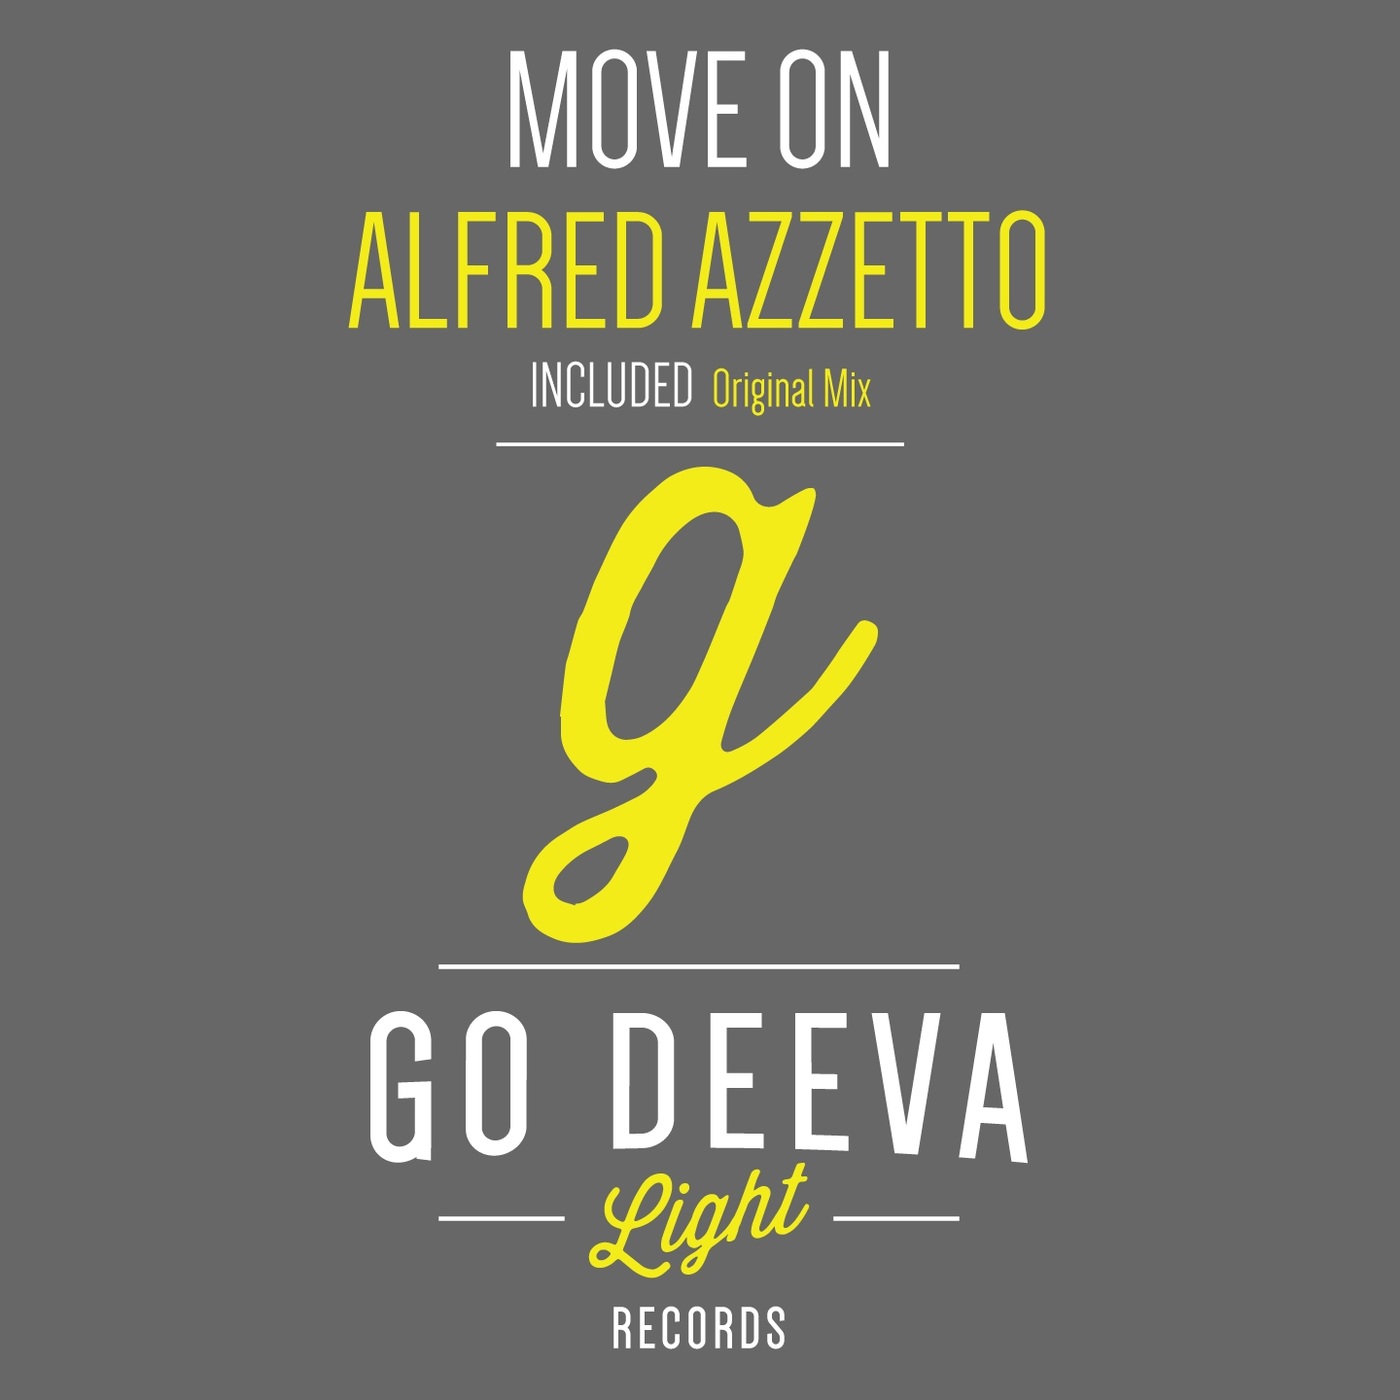 Alfred Azzetto - Move On / Go Deeva Light Records